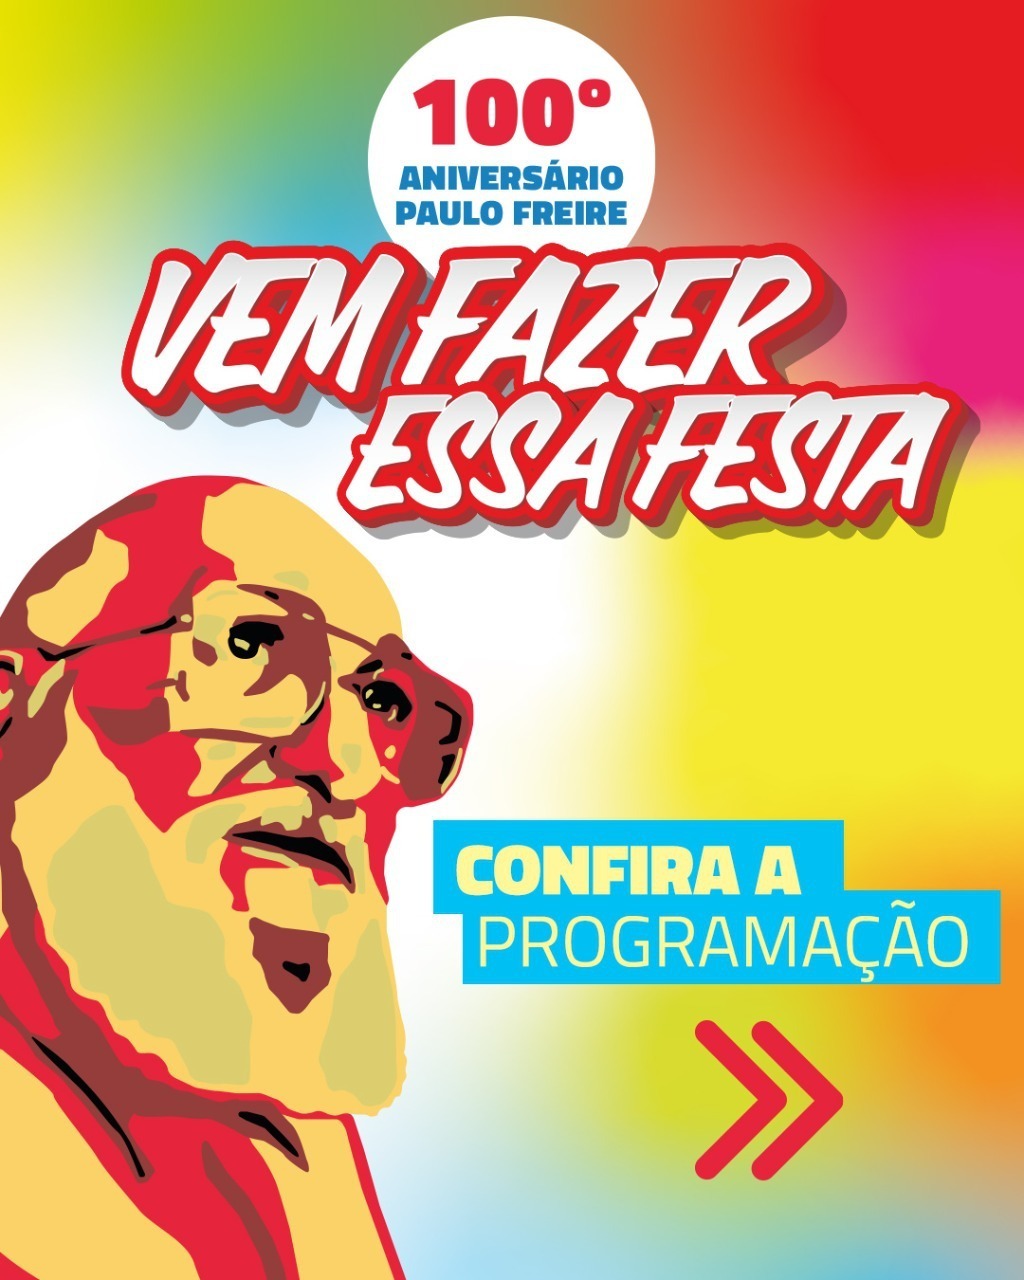 Centenário de Paulo Freire será celebrado em Recife entre os dias 17 e 20 de setembro